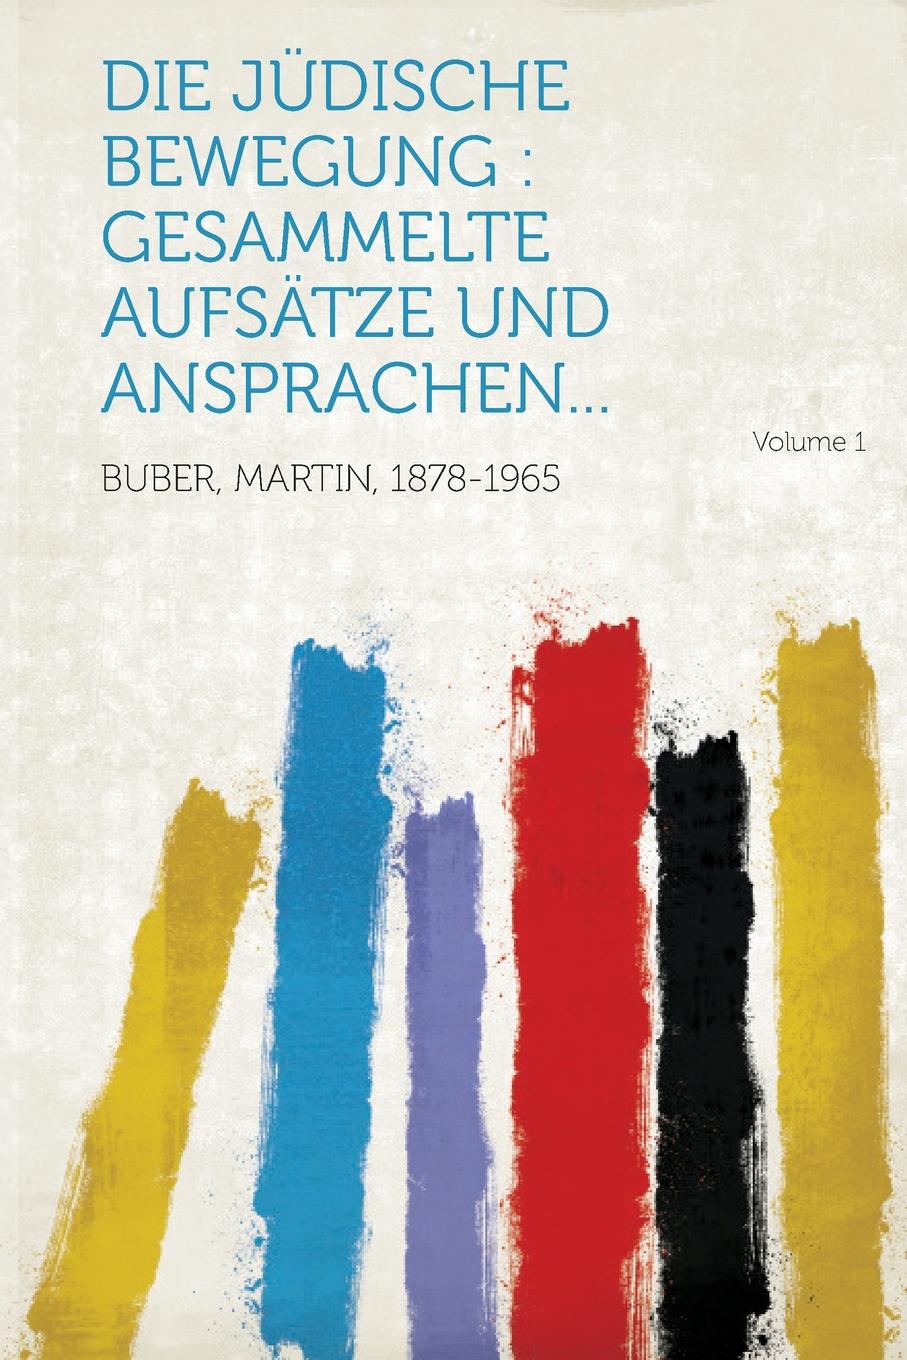 Die judische Bewegung. gesammelte Aufsatze und Ansprachen... Volume 1